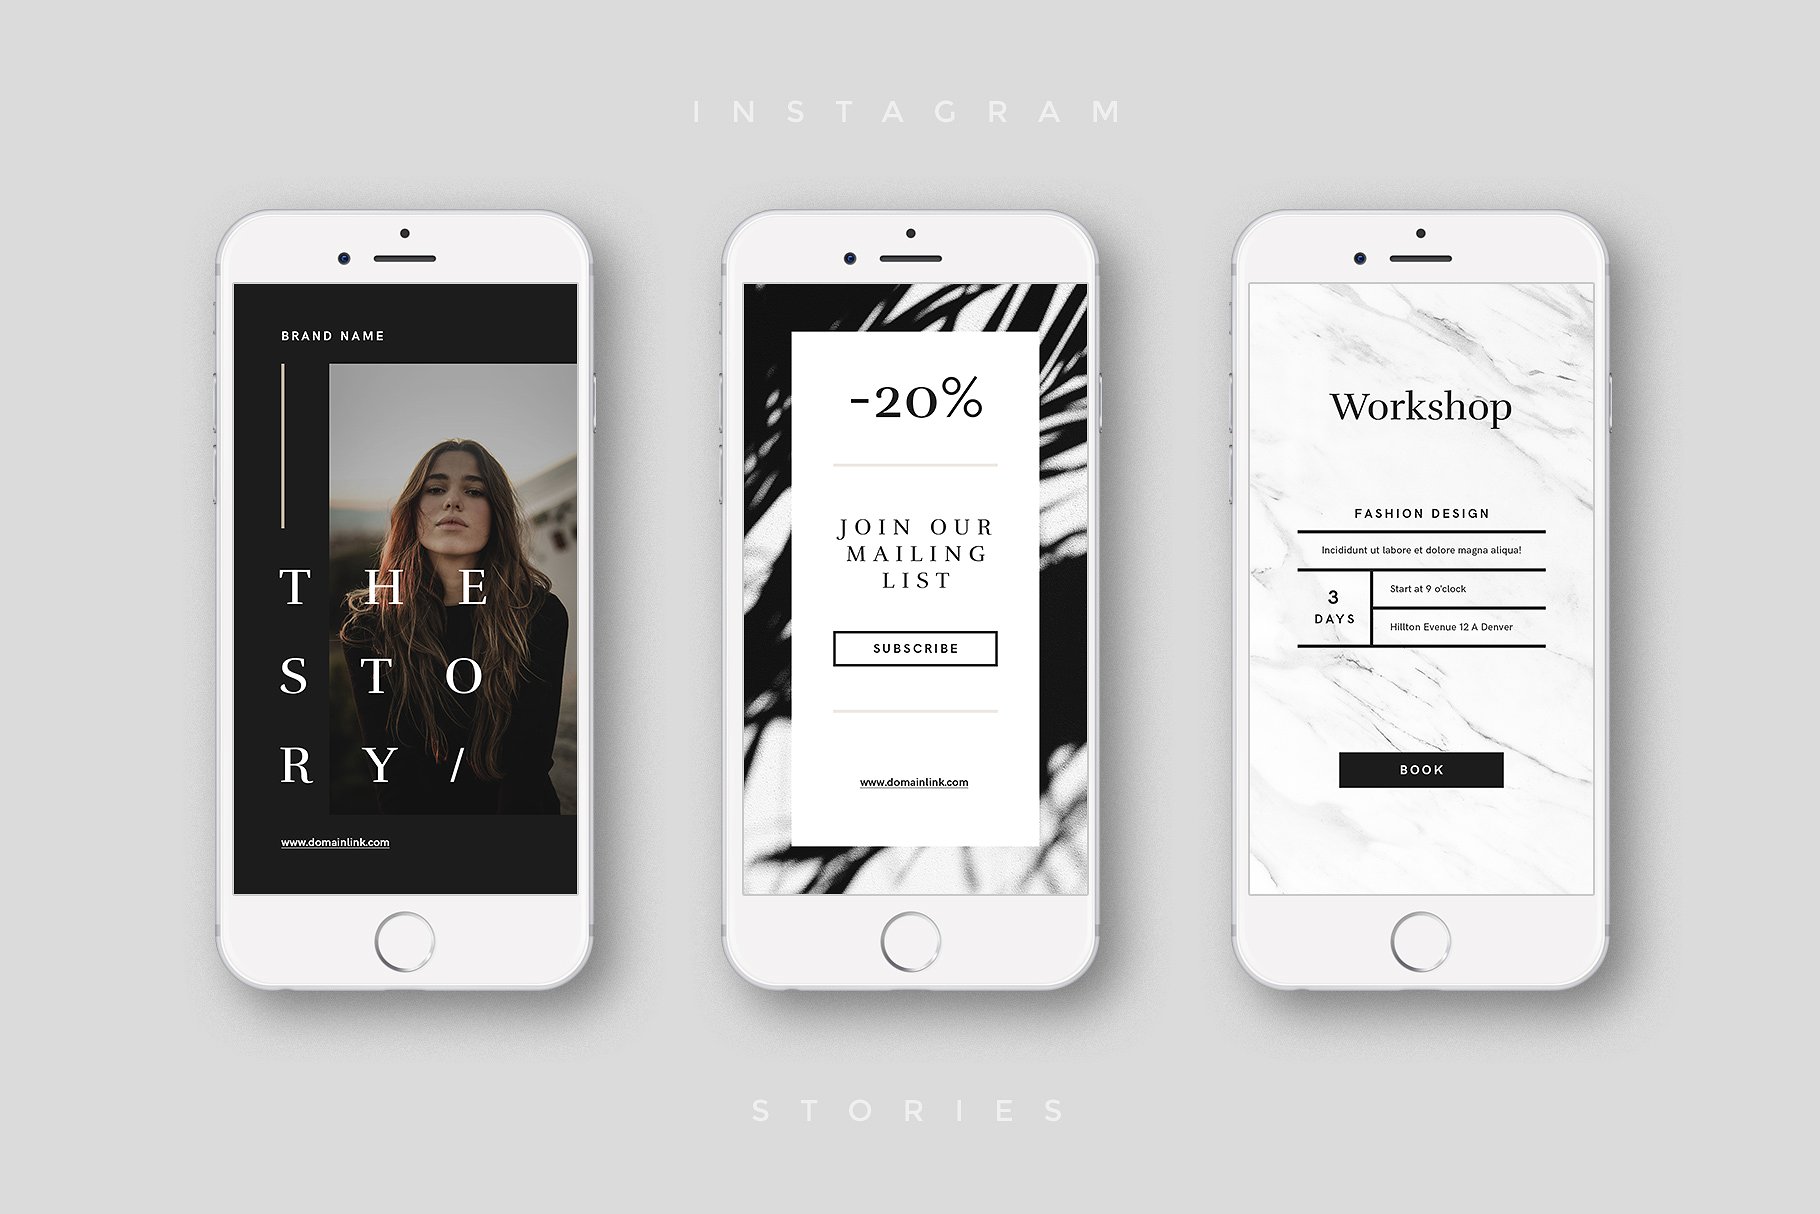 奢侈品电商社交媒体Ins故事贴图模板素材中国精选 Luxury Instagram Stories Pack插图(4)